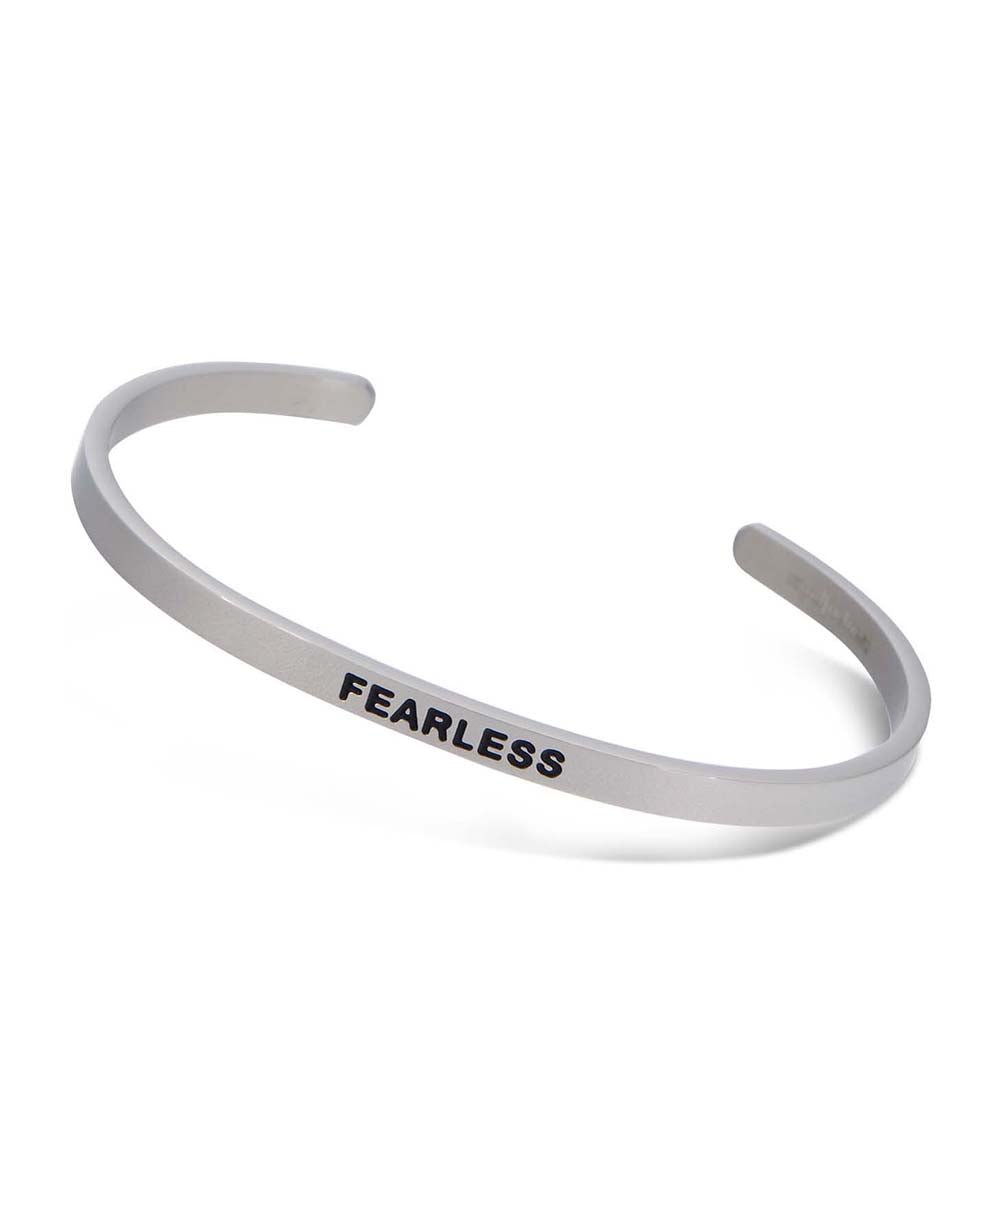 Engraved Metal Cuff Bracelet, Fearless - Bracelets